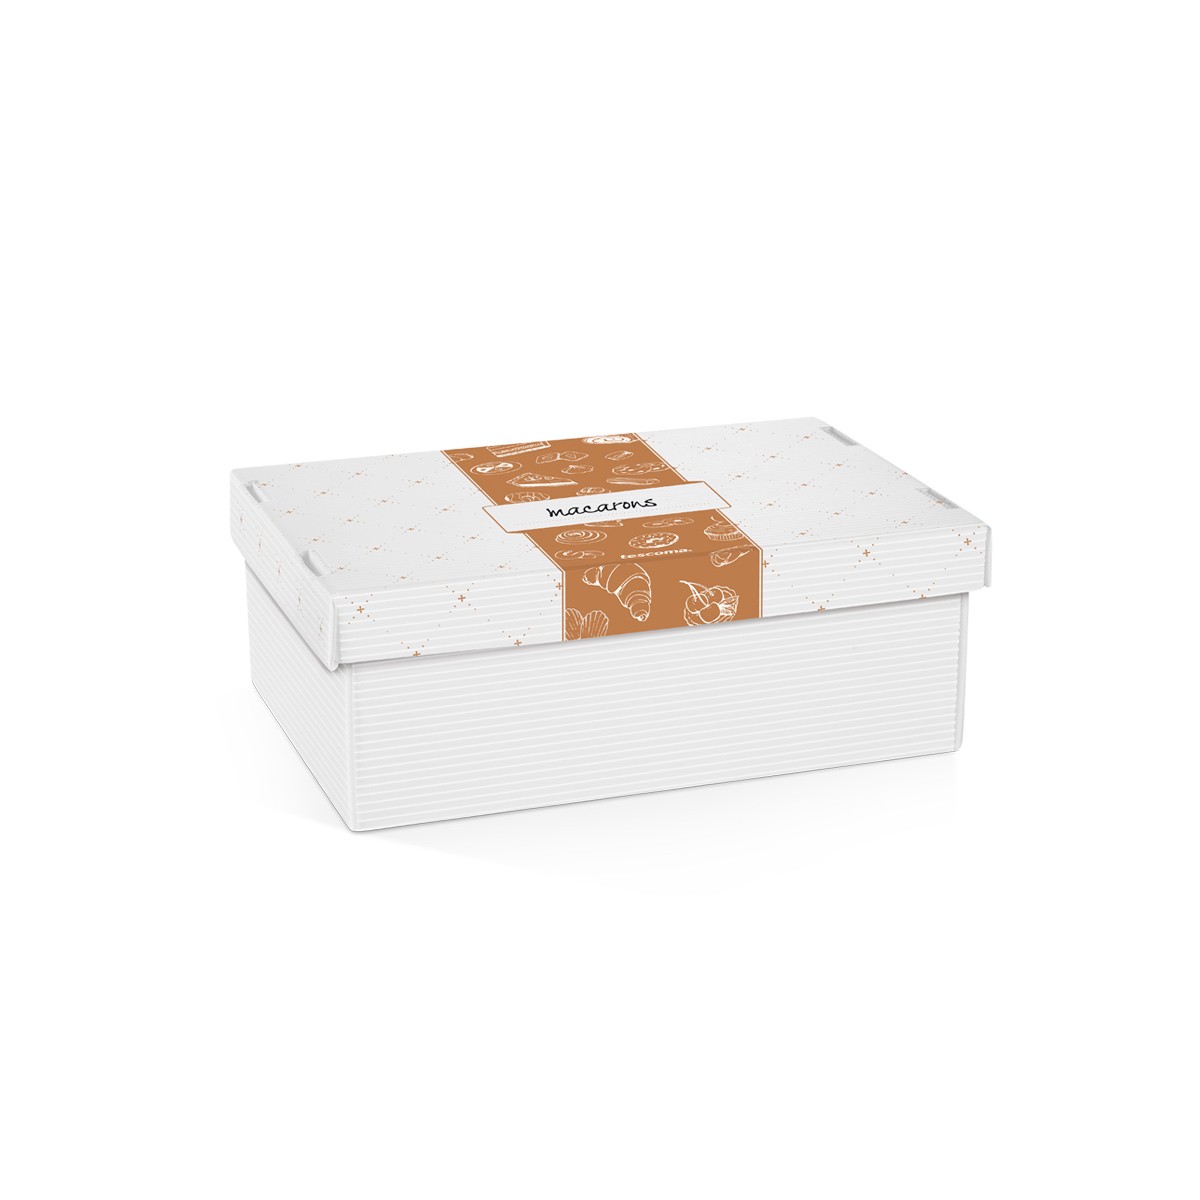 Krabica na sladkosti a lahôdky DELÍCIA, 28 x 18 cm